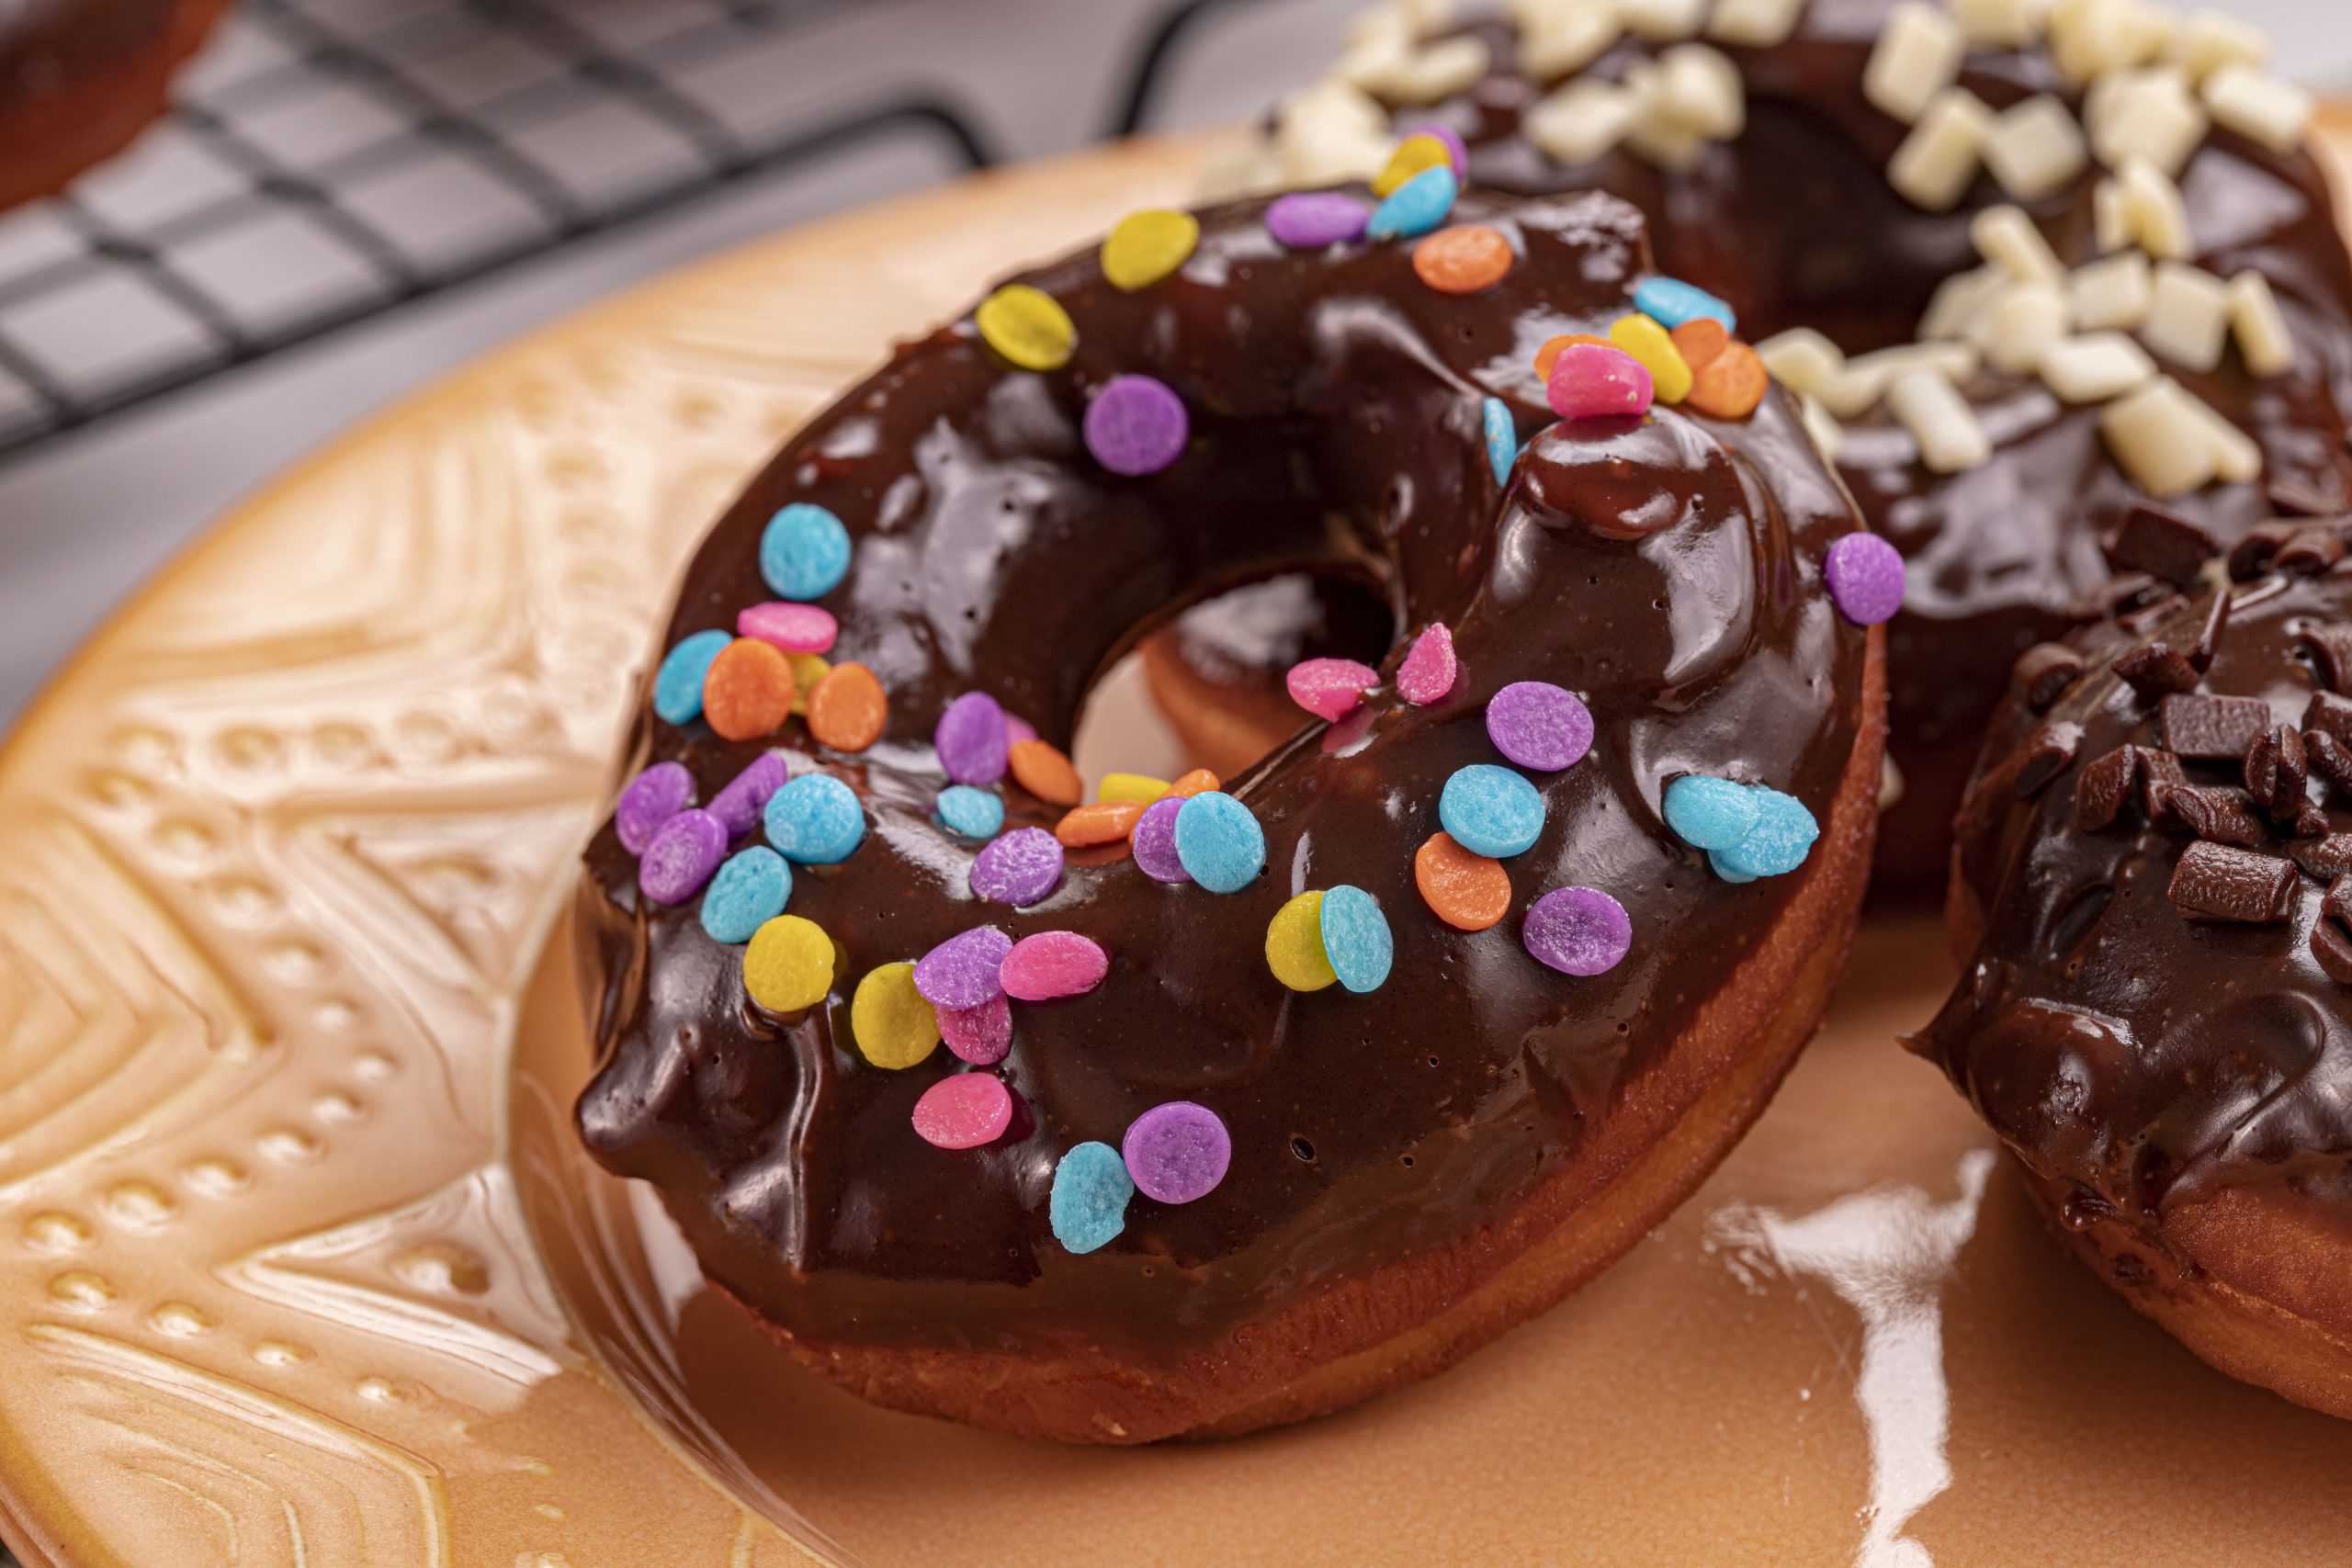 Degustação - 5 donuts gourmet Molly Donuts - Seus donuts fofinhos e cremosos